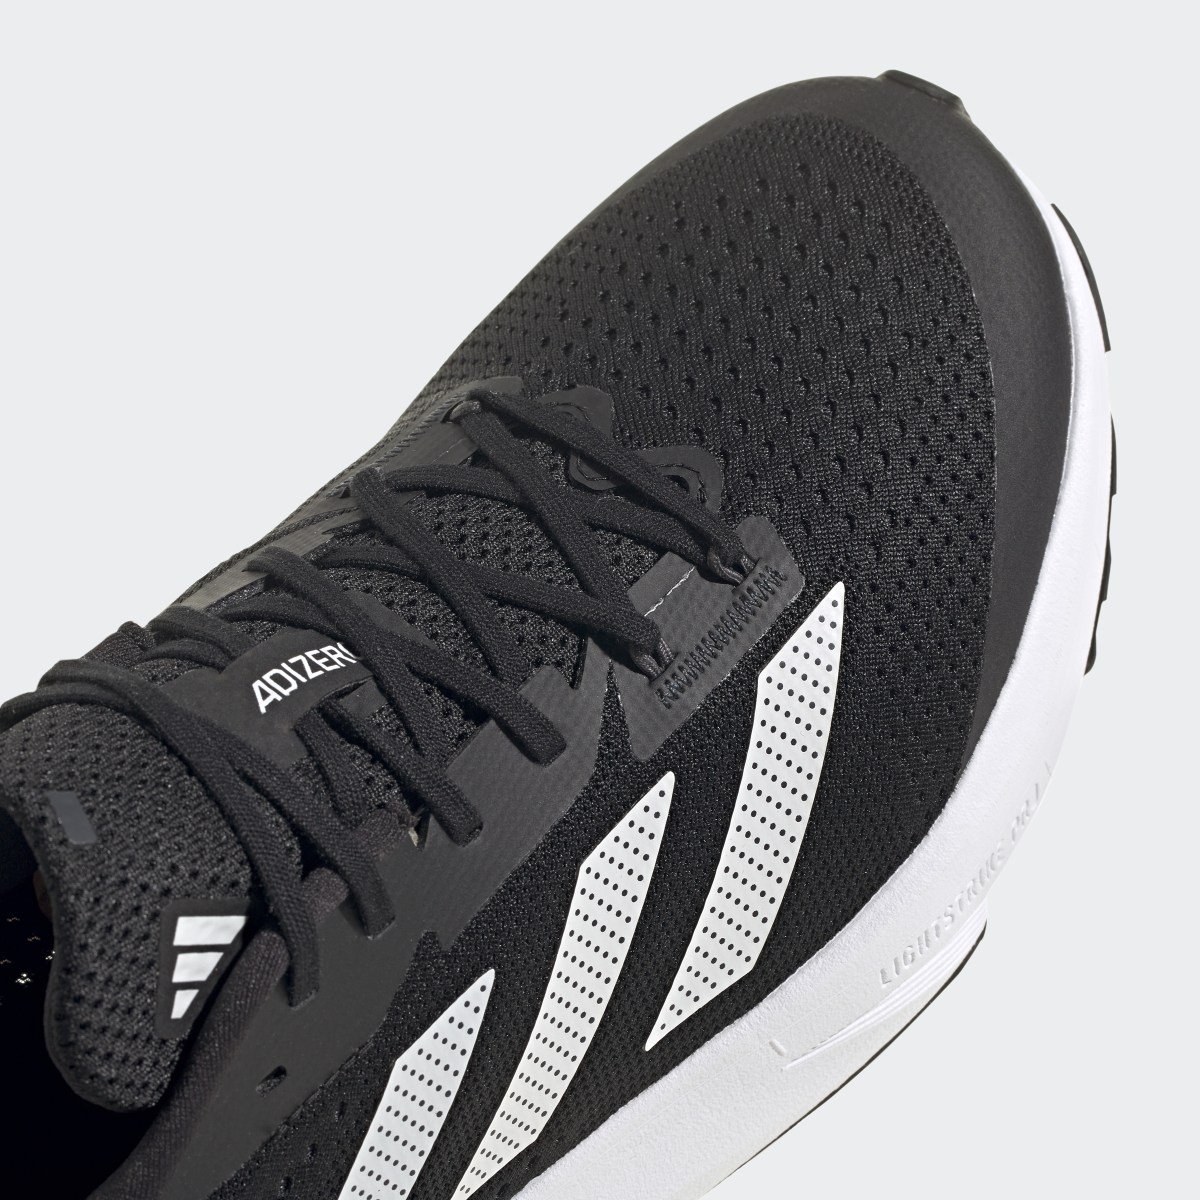 Adidas Adizero SL Running Shoes. 10